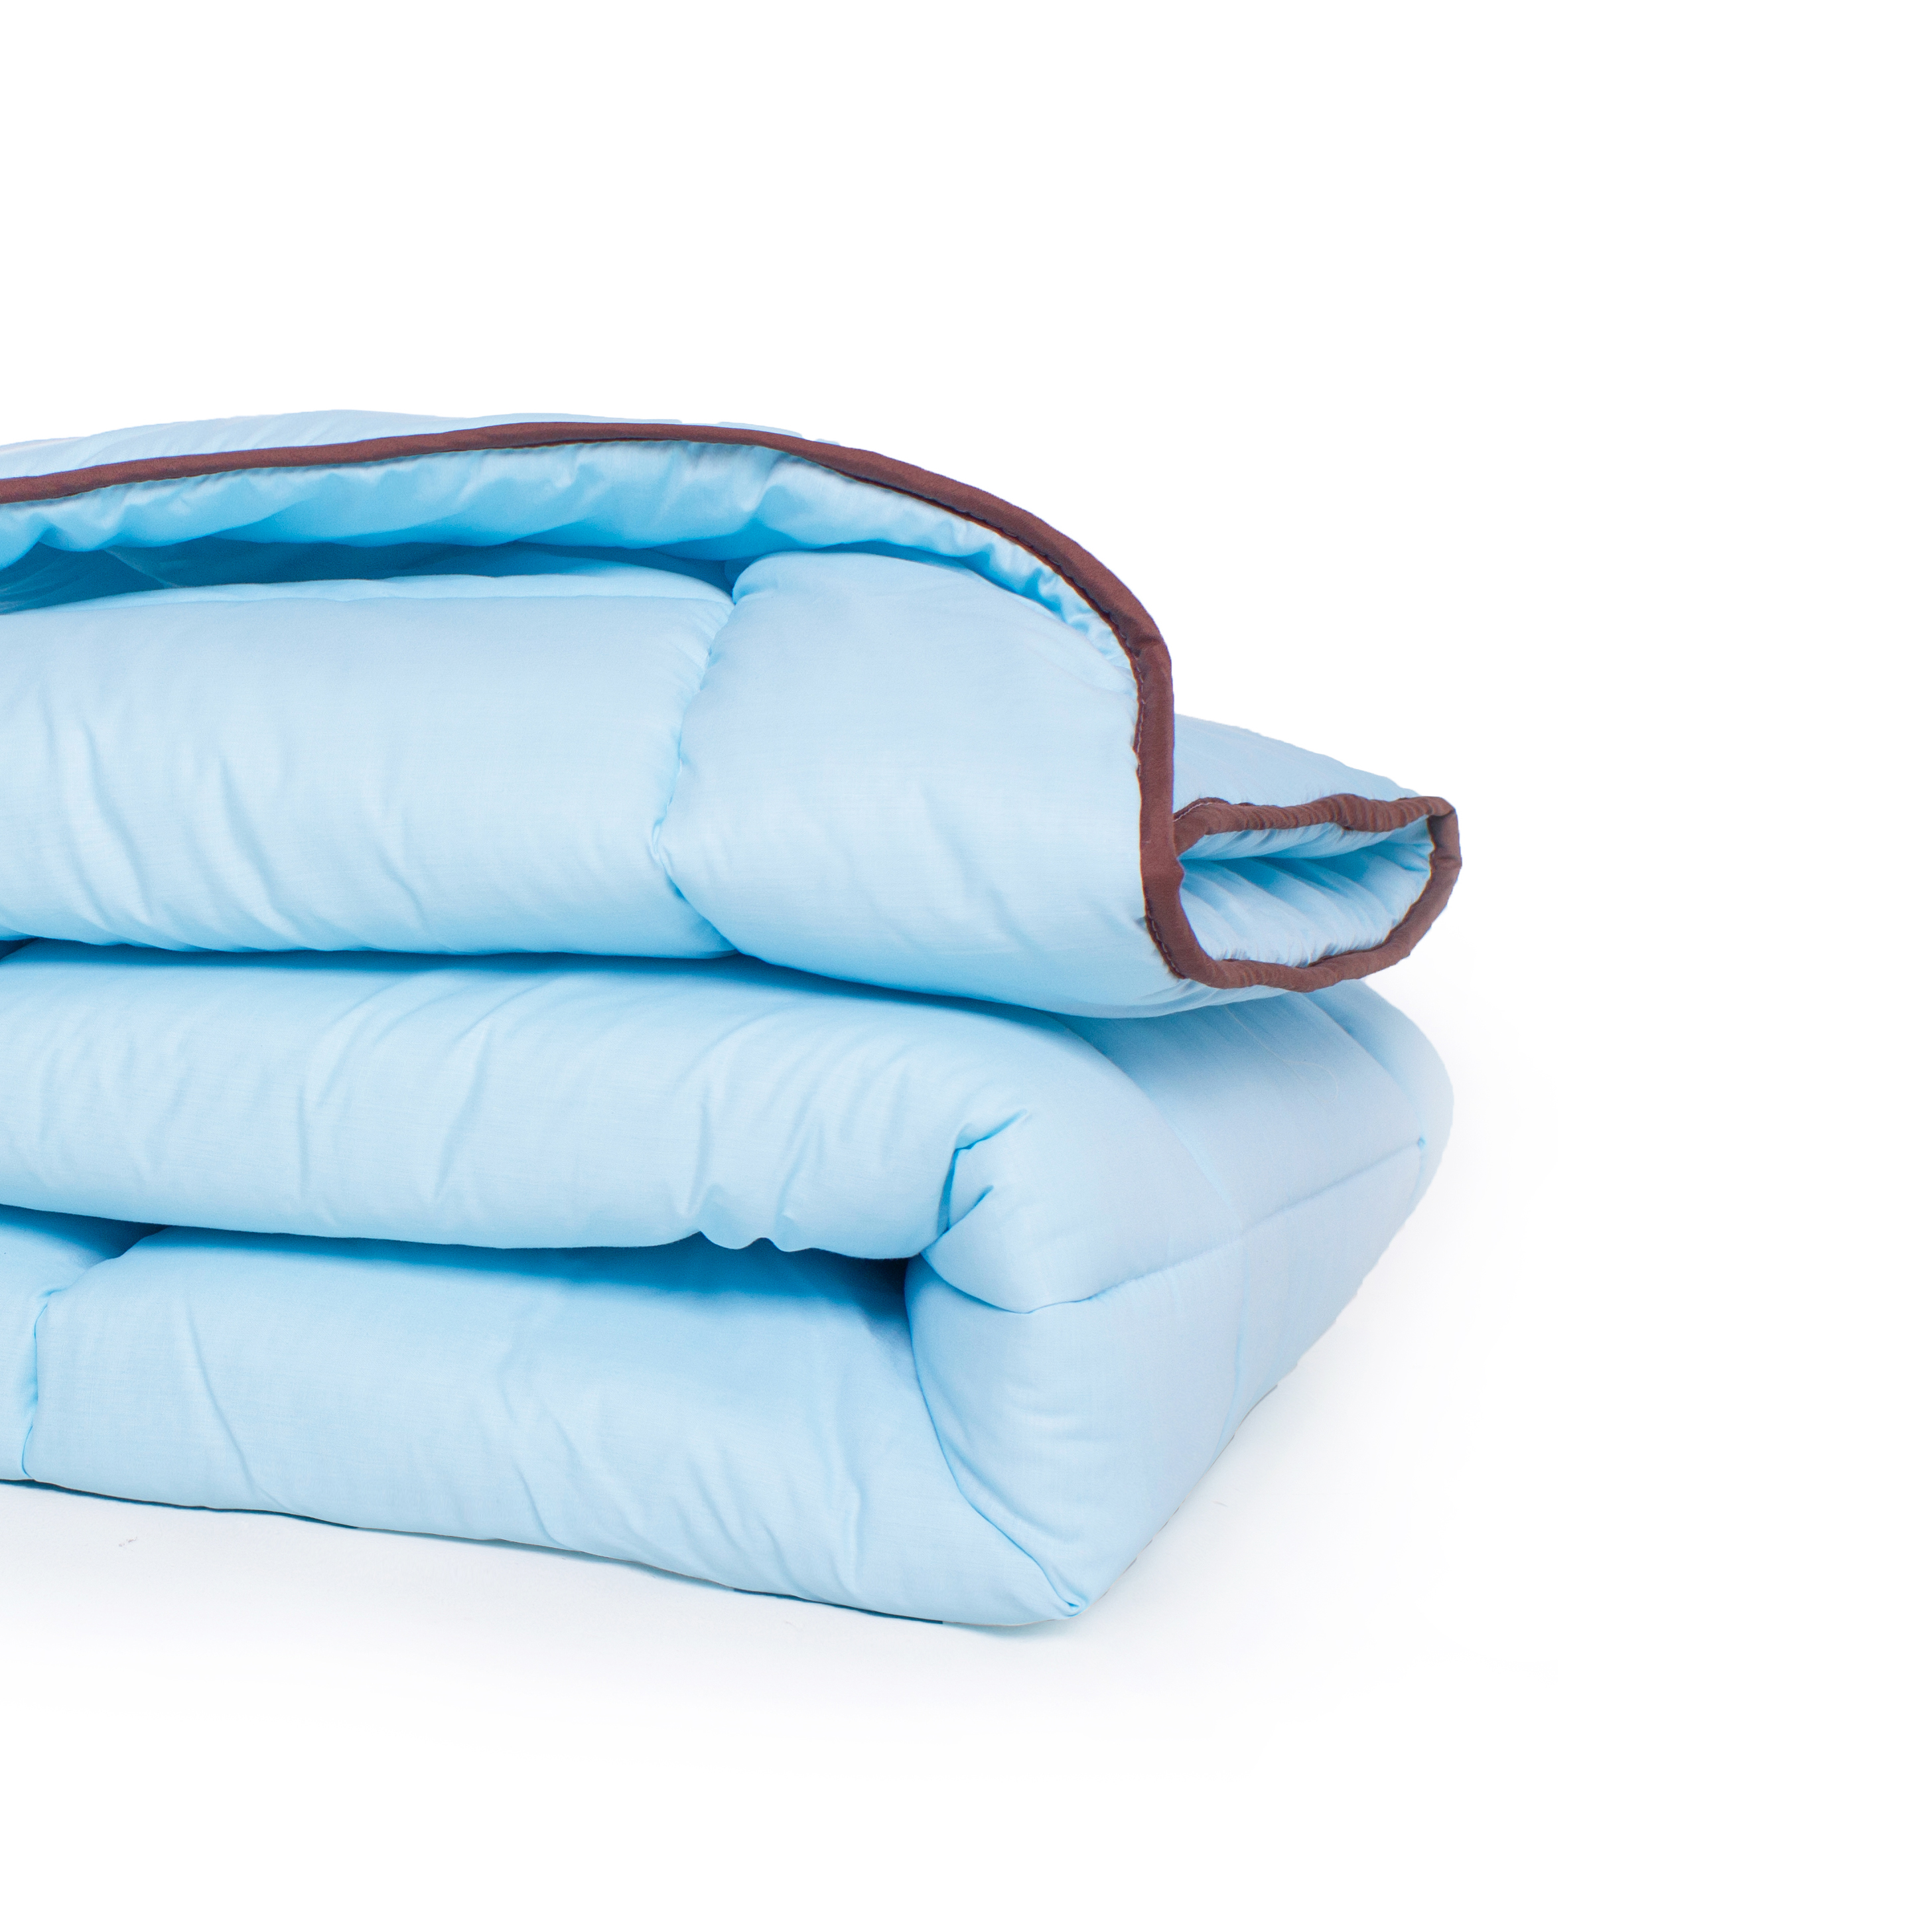 Одеяло шерстяное MirSon Valentino №0338, зимнее, 220x240 см, голубое - фото 3